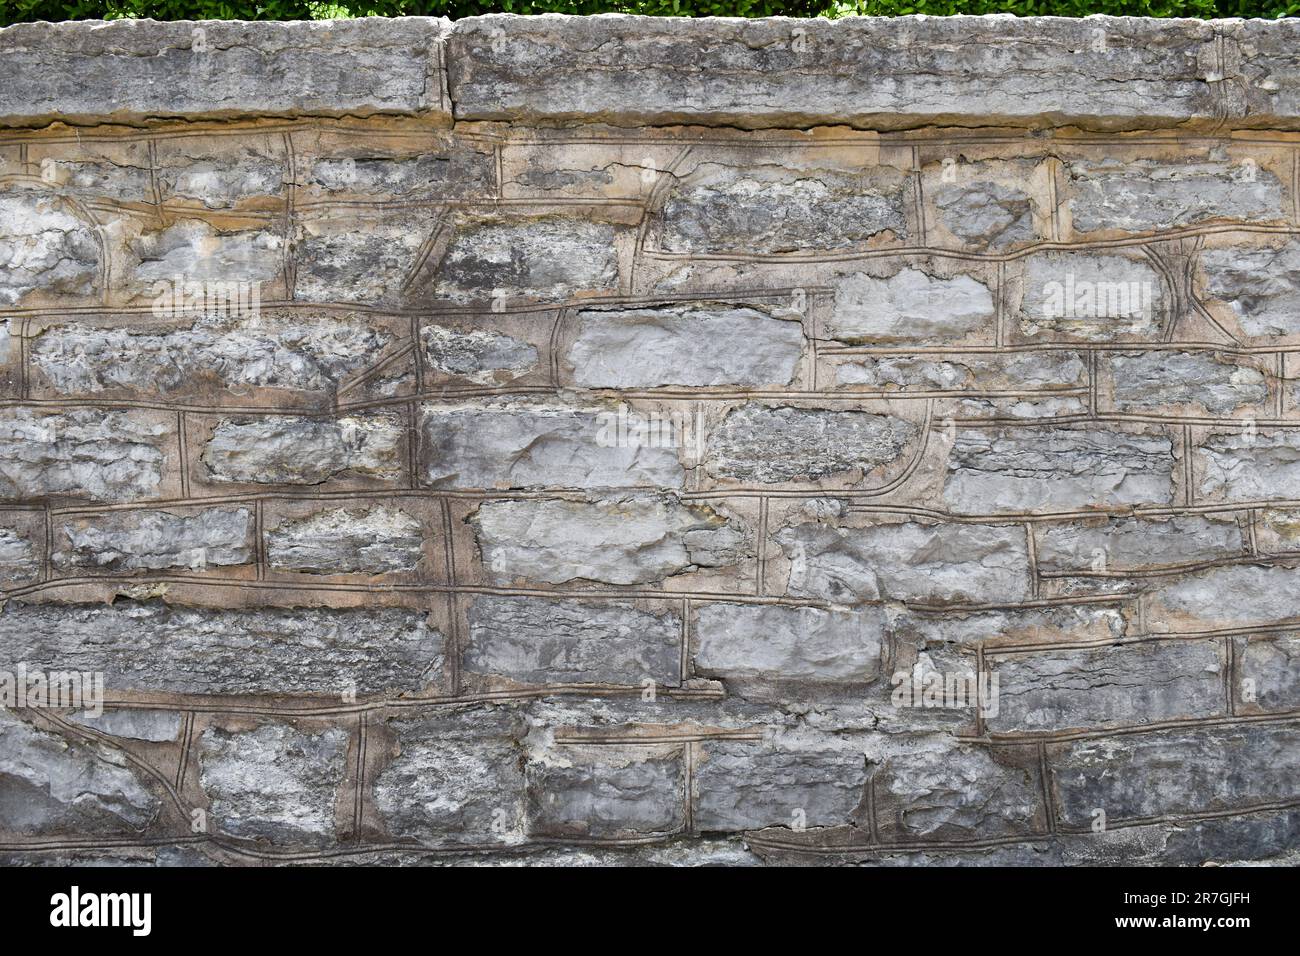 Large stone wall ledge background Stock Photo